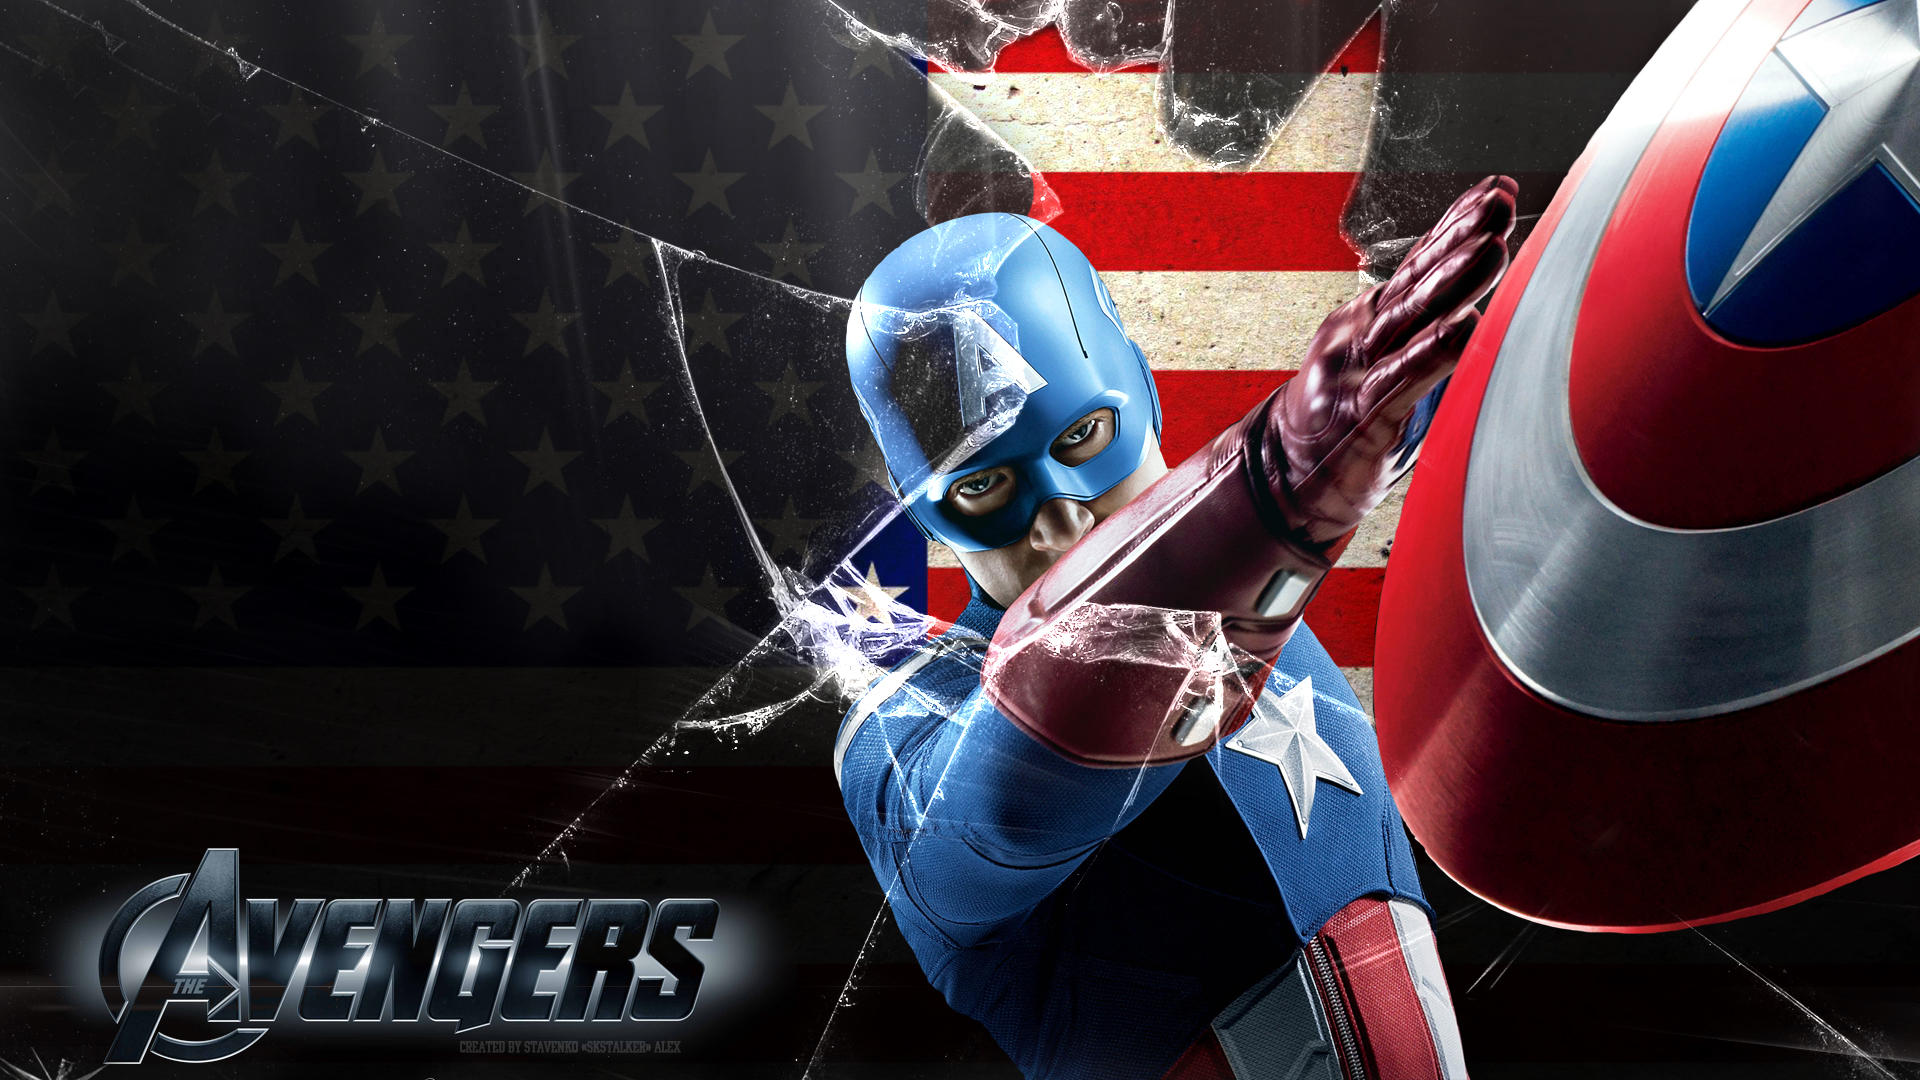 Avengers Captain America Wallpaper 1080p by SKstalker on DeviantArt